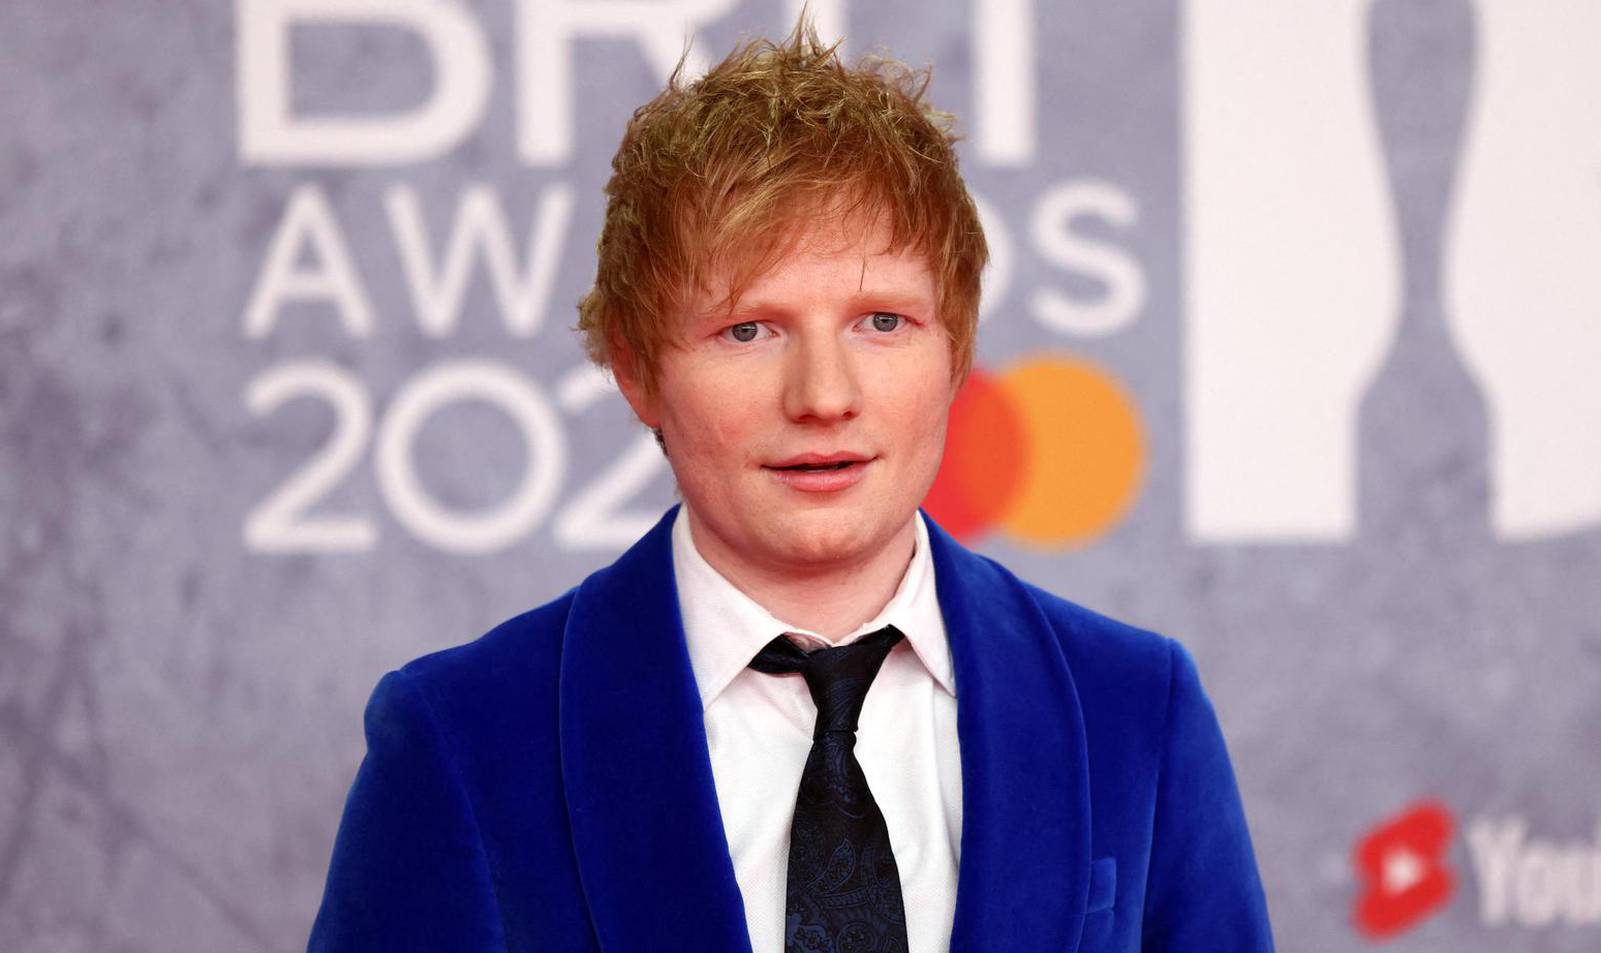 U prodaju krenule ulaznice za Eda Sheerana: Ovo su cijene